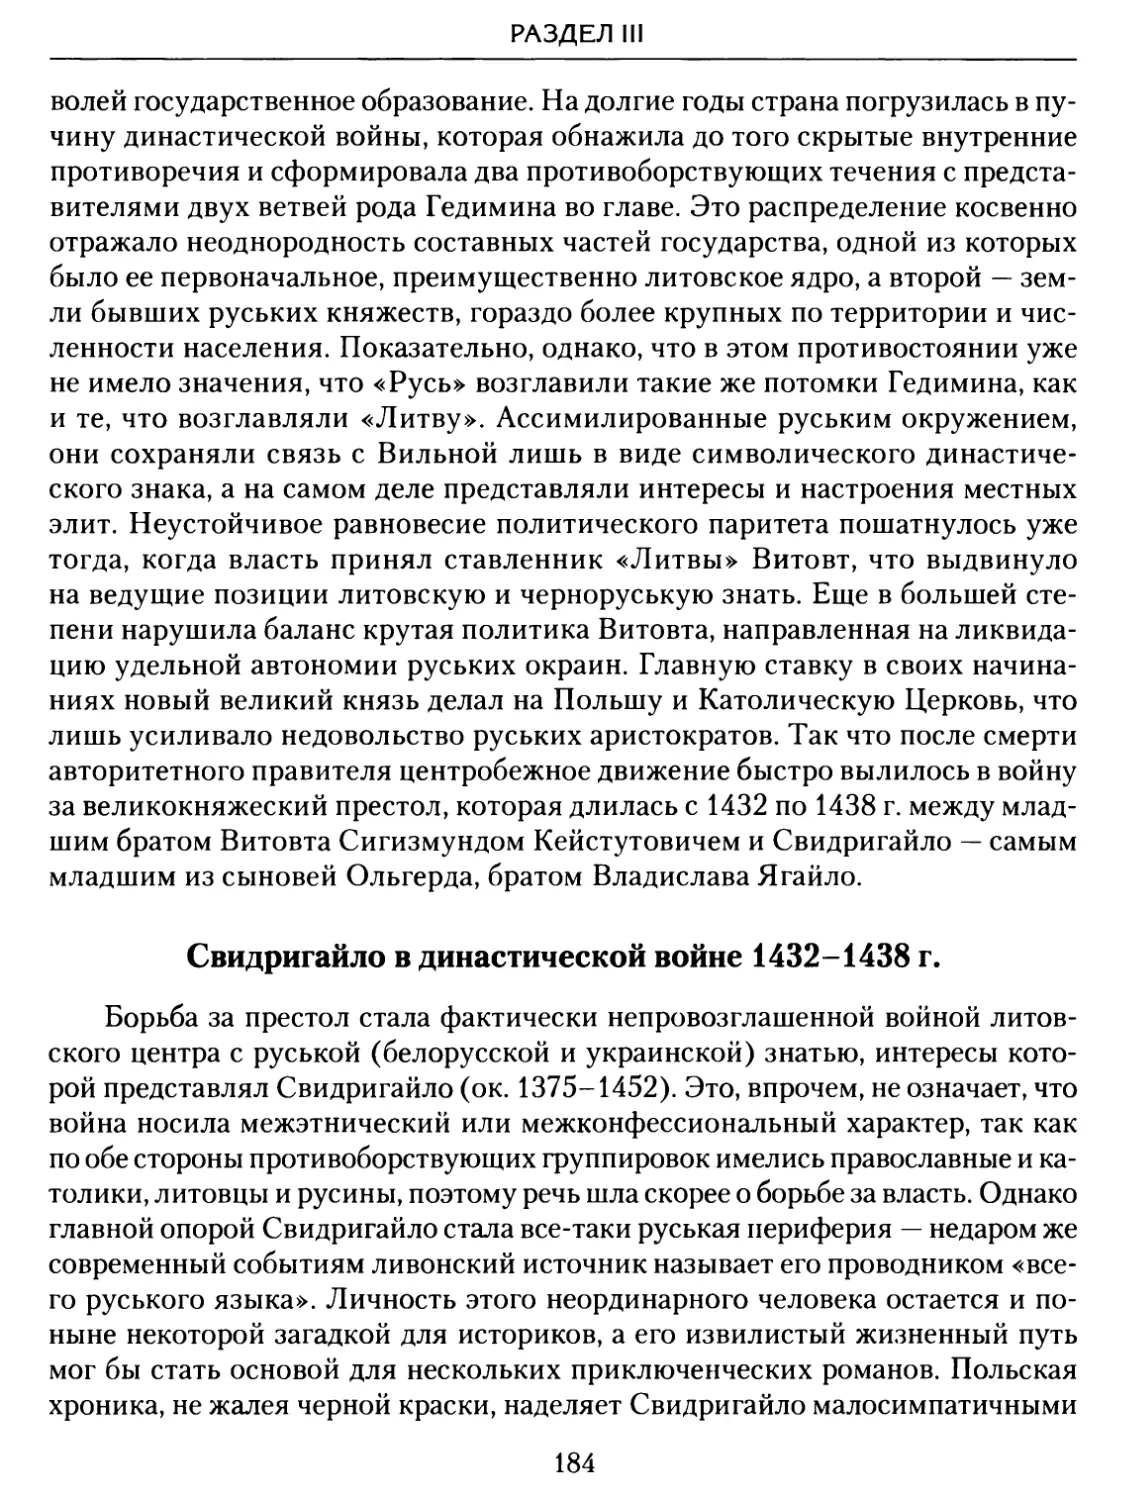 Свидригайло в династической войне 1432–1438 гг.